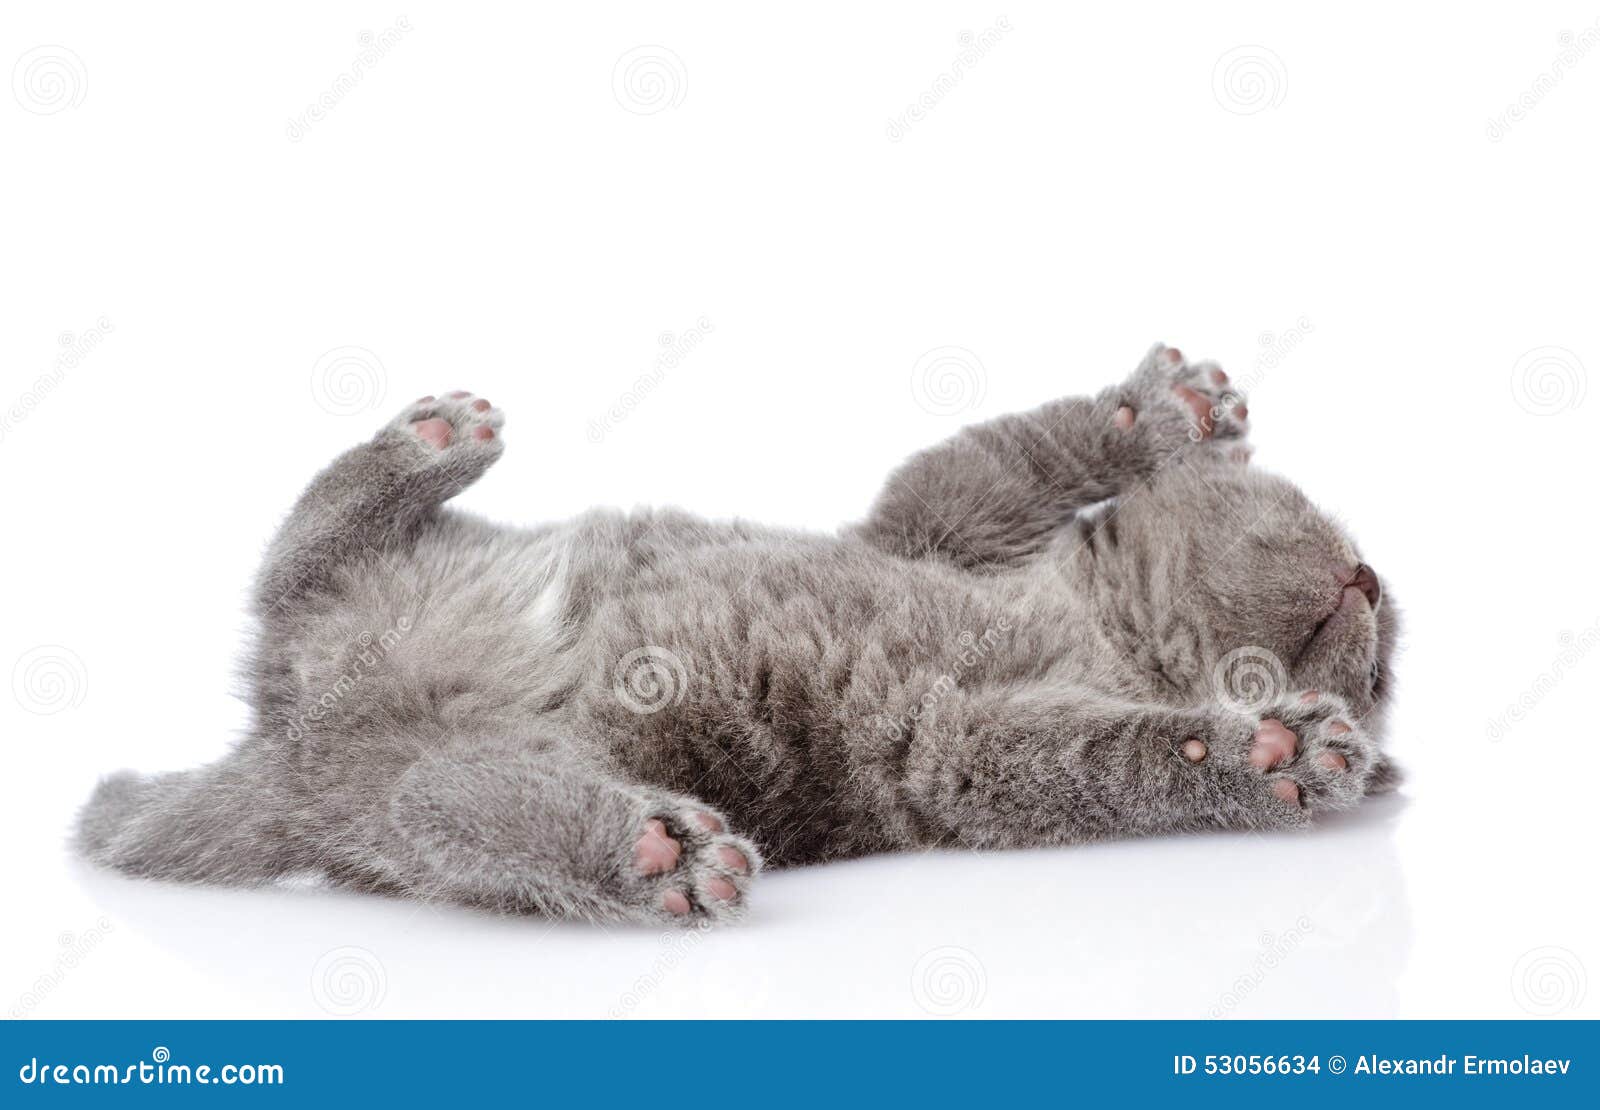 Серый кот лежит на спине